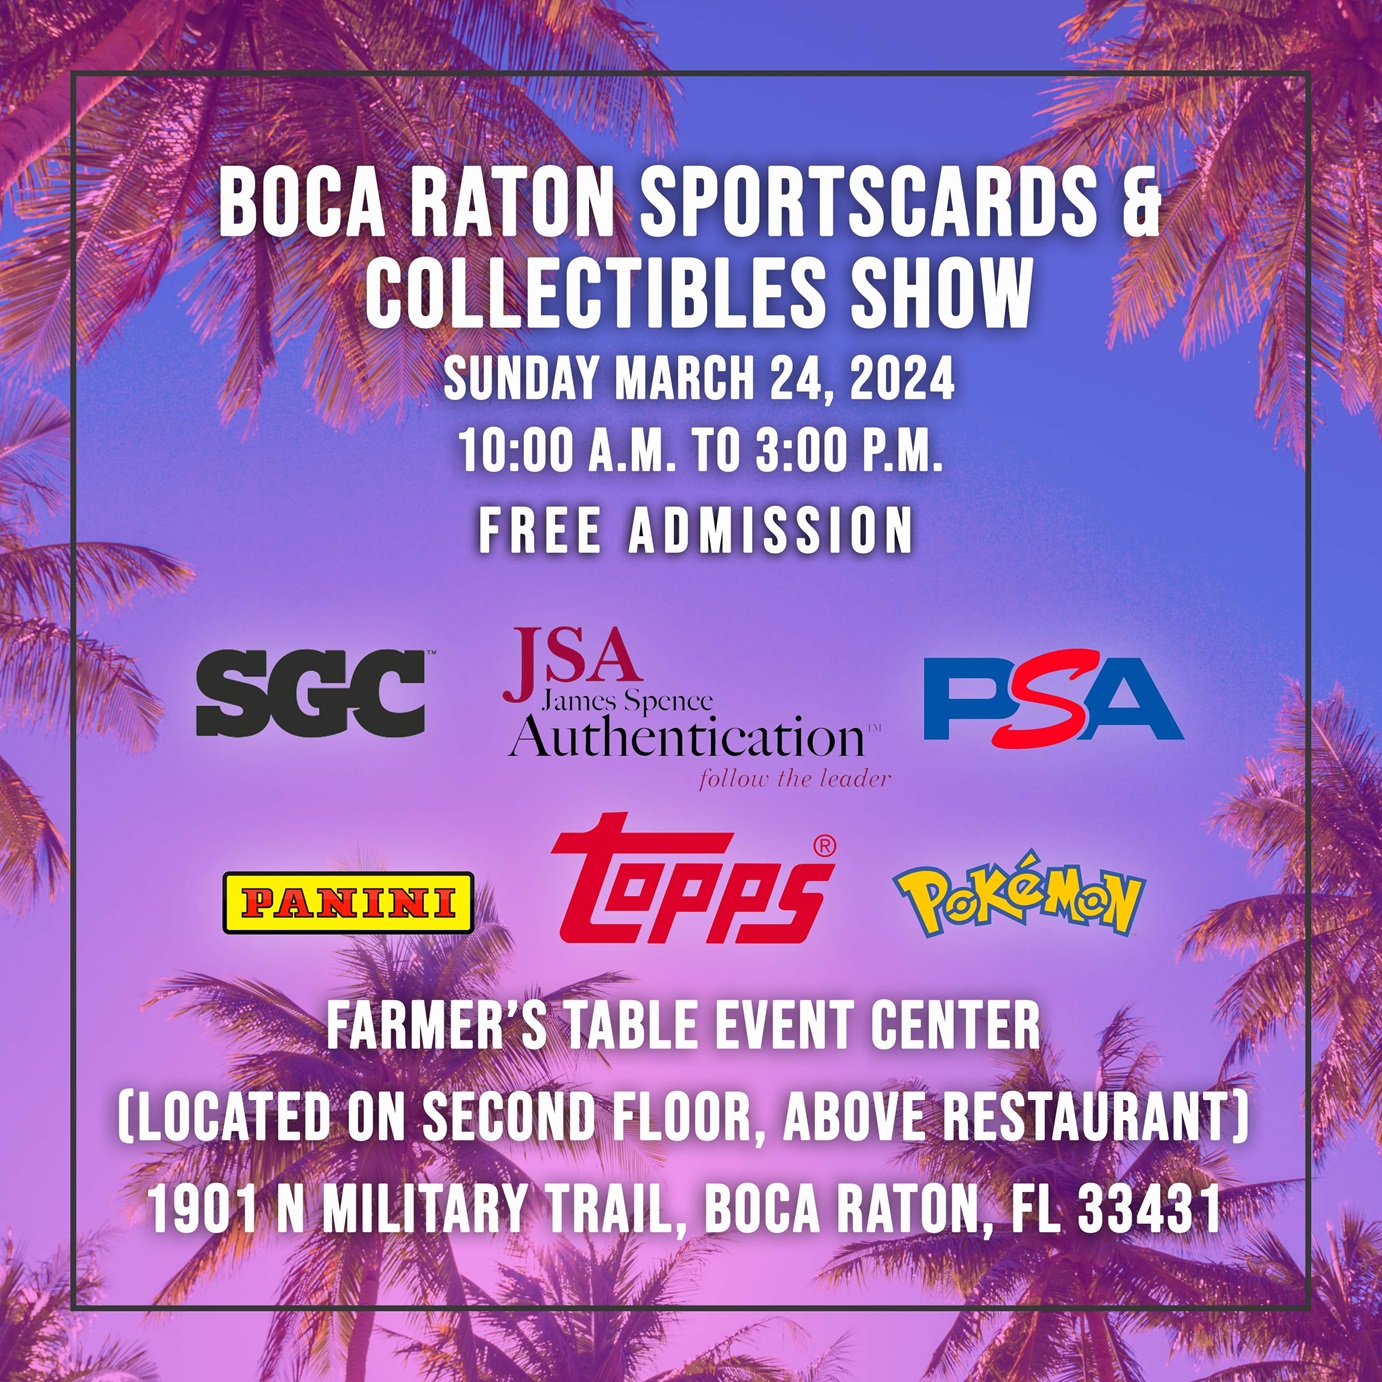 Boca Raton Sportscards & Collectibles Show - Boca Raton